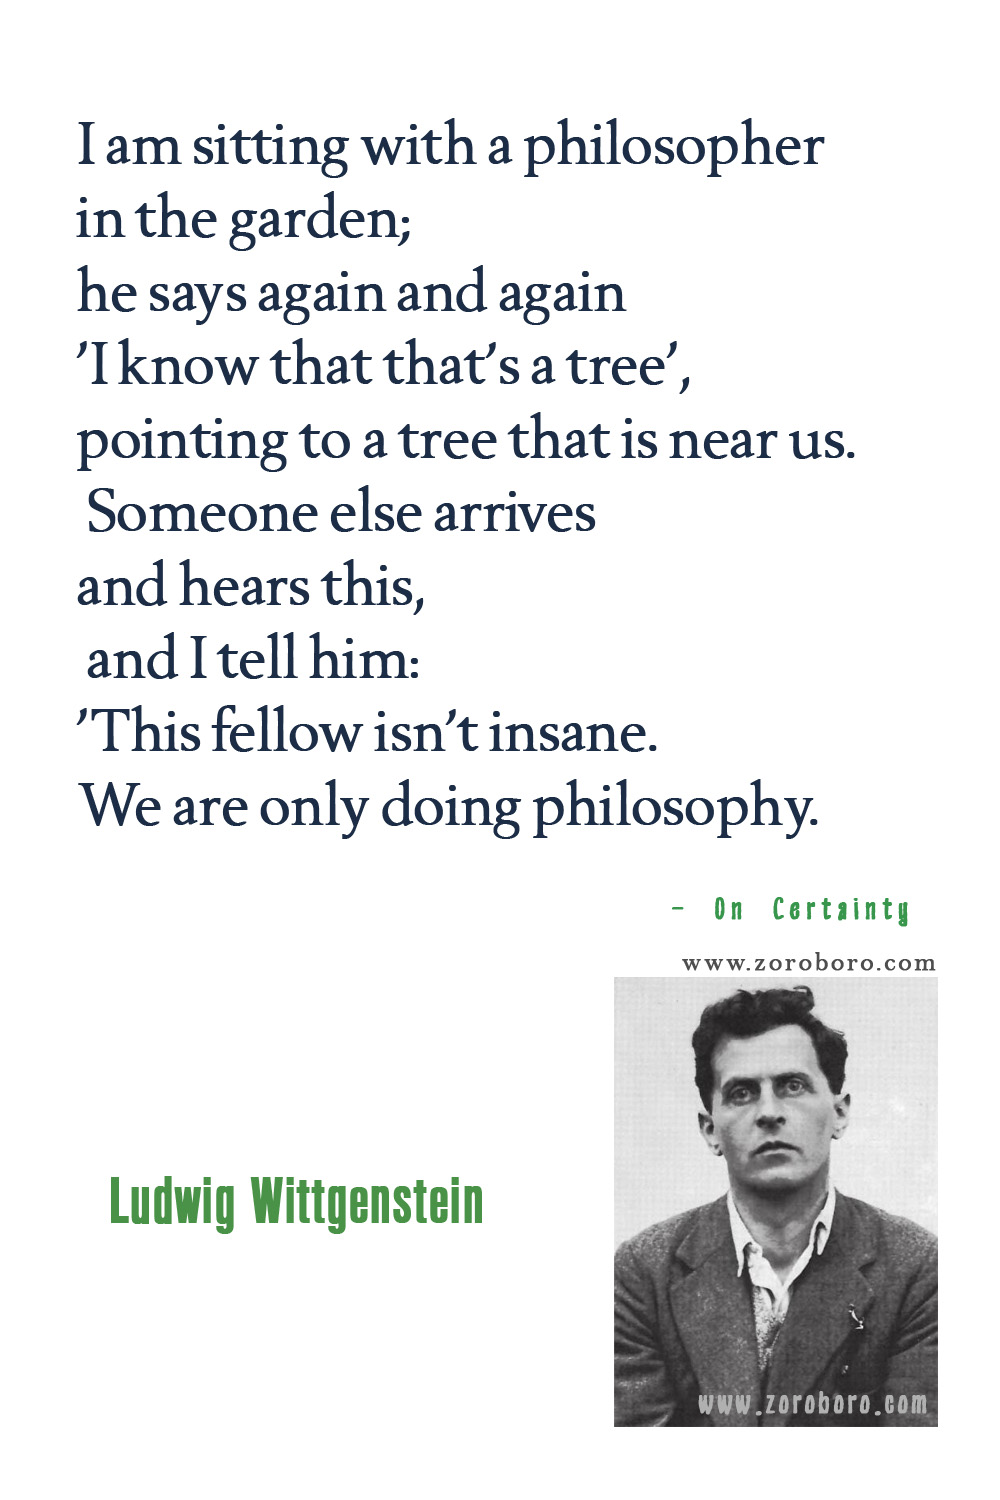 Ludwig Wittgenstein Quotes, Ludwig Wittgenstein Philosophy, Ludwig Wittgenstein Books Quotes, Ludwig Wittgenstein philosophy of language.